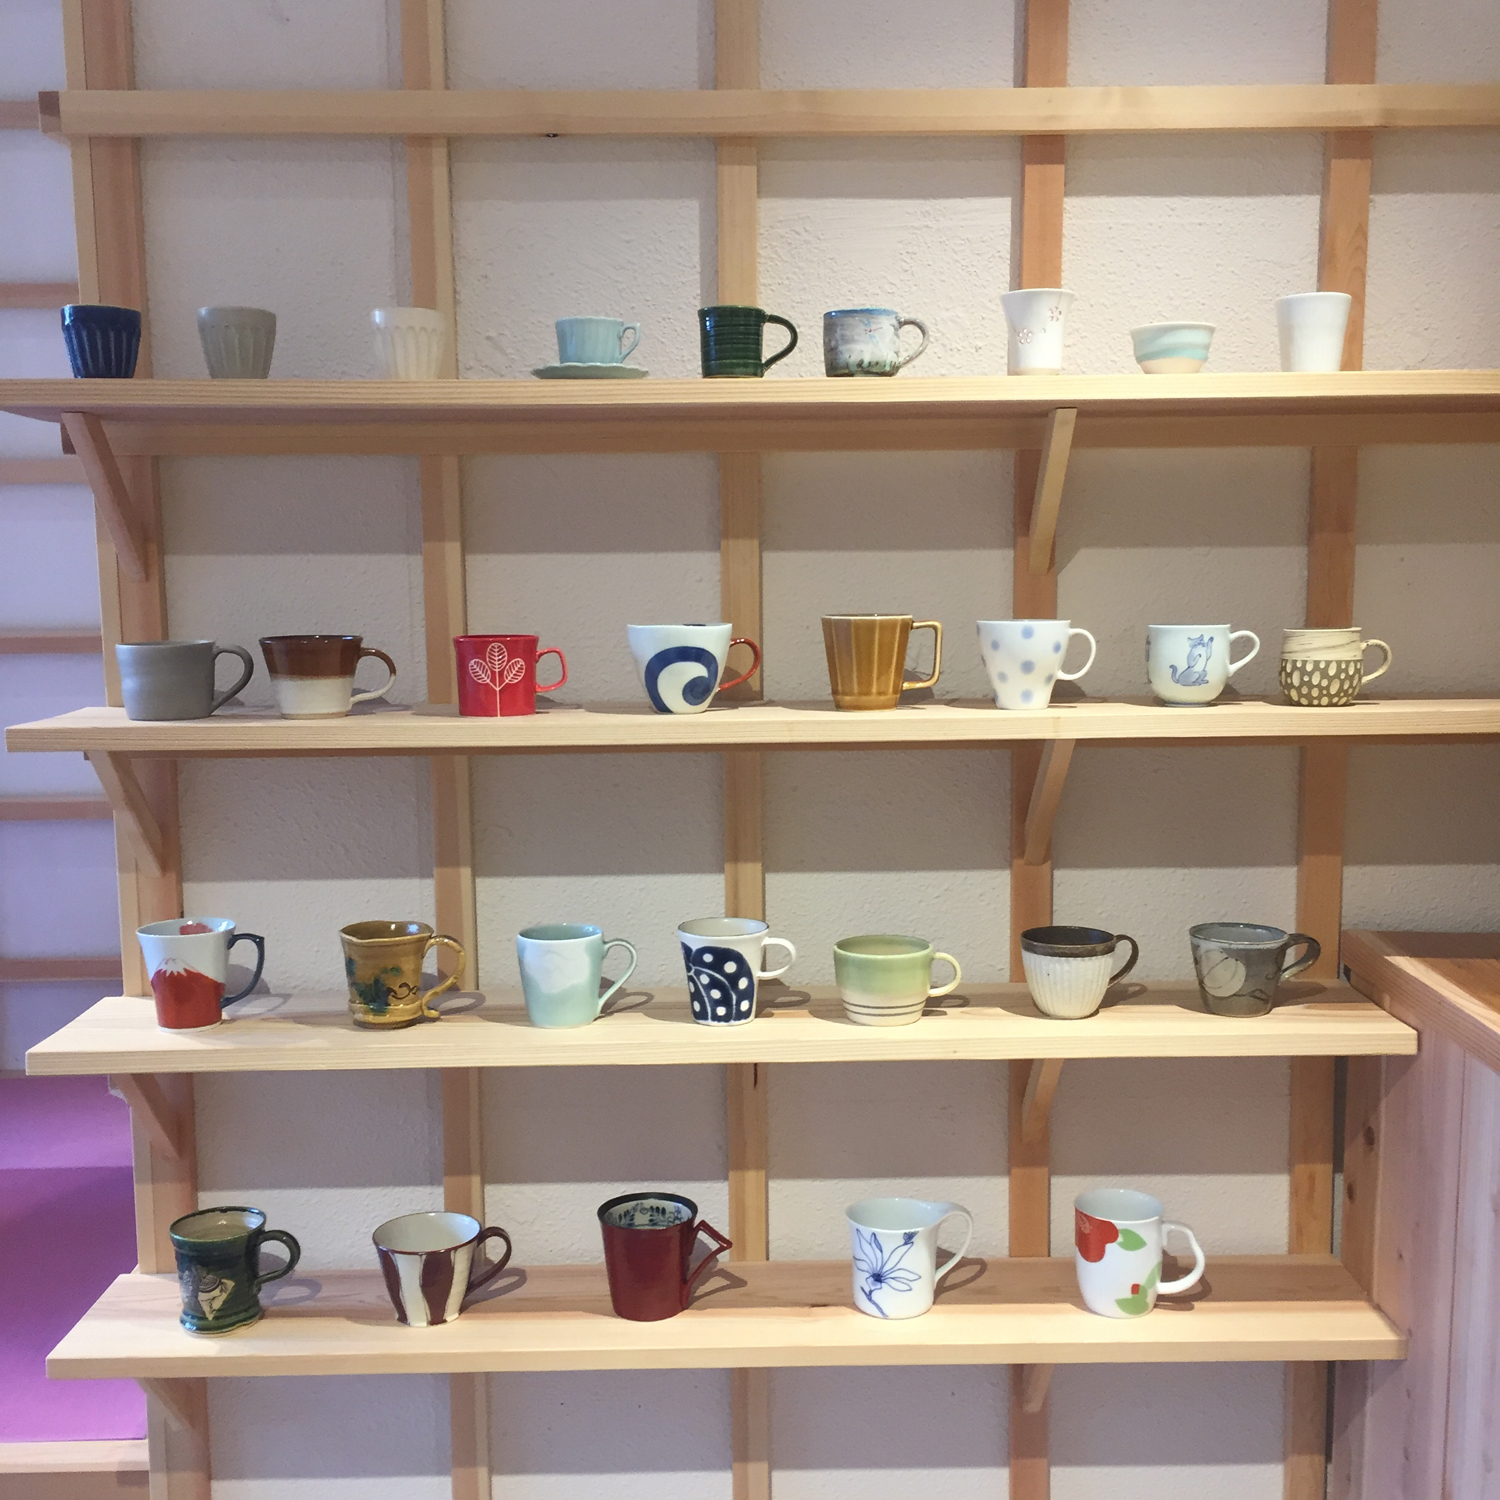 コーヒーを飲むマグカップを選ぶ楽しみも。「Mug pop」で扱っている各窯元・陶芸家の作品約30種類から選択可能。